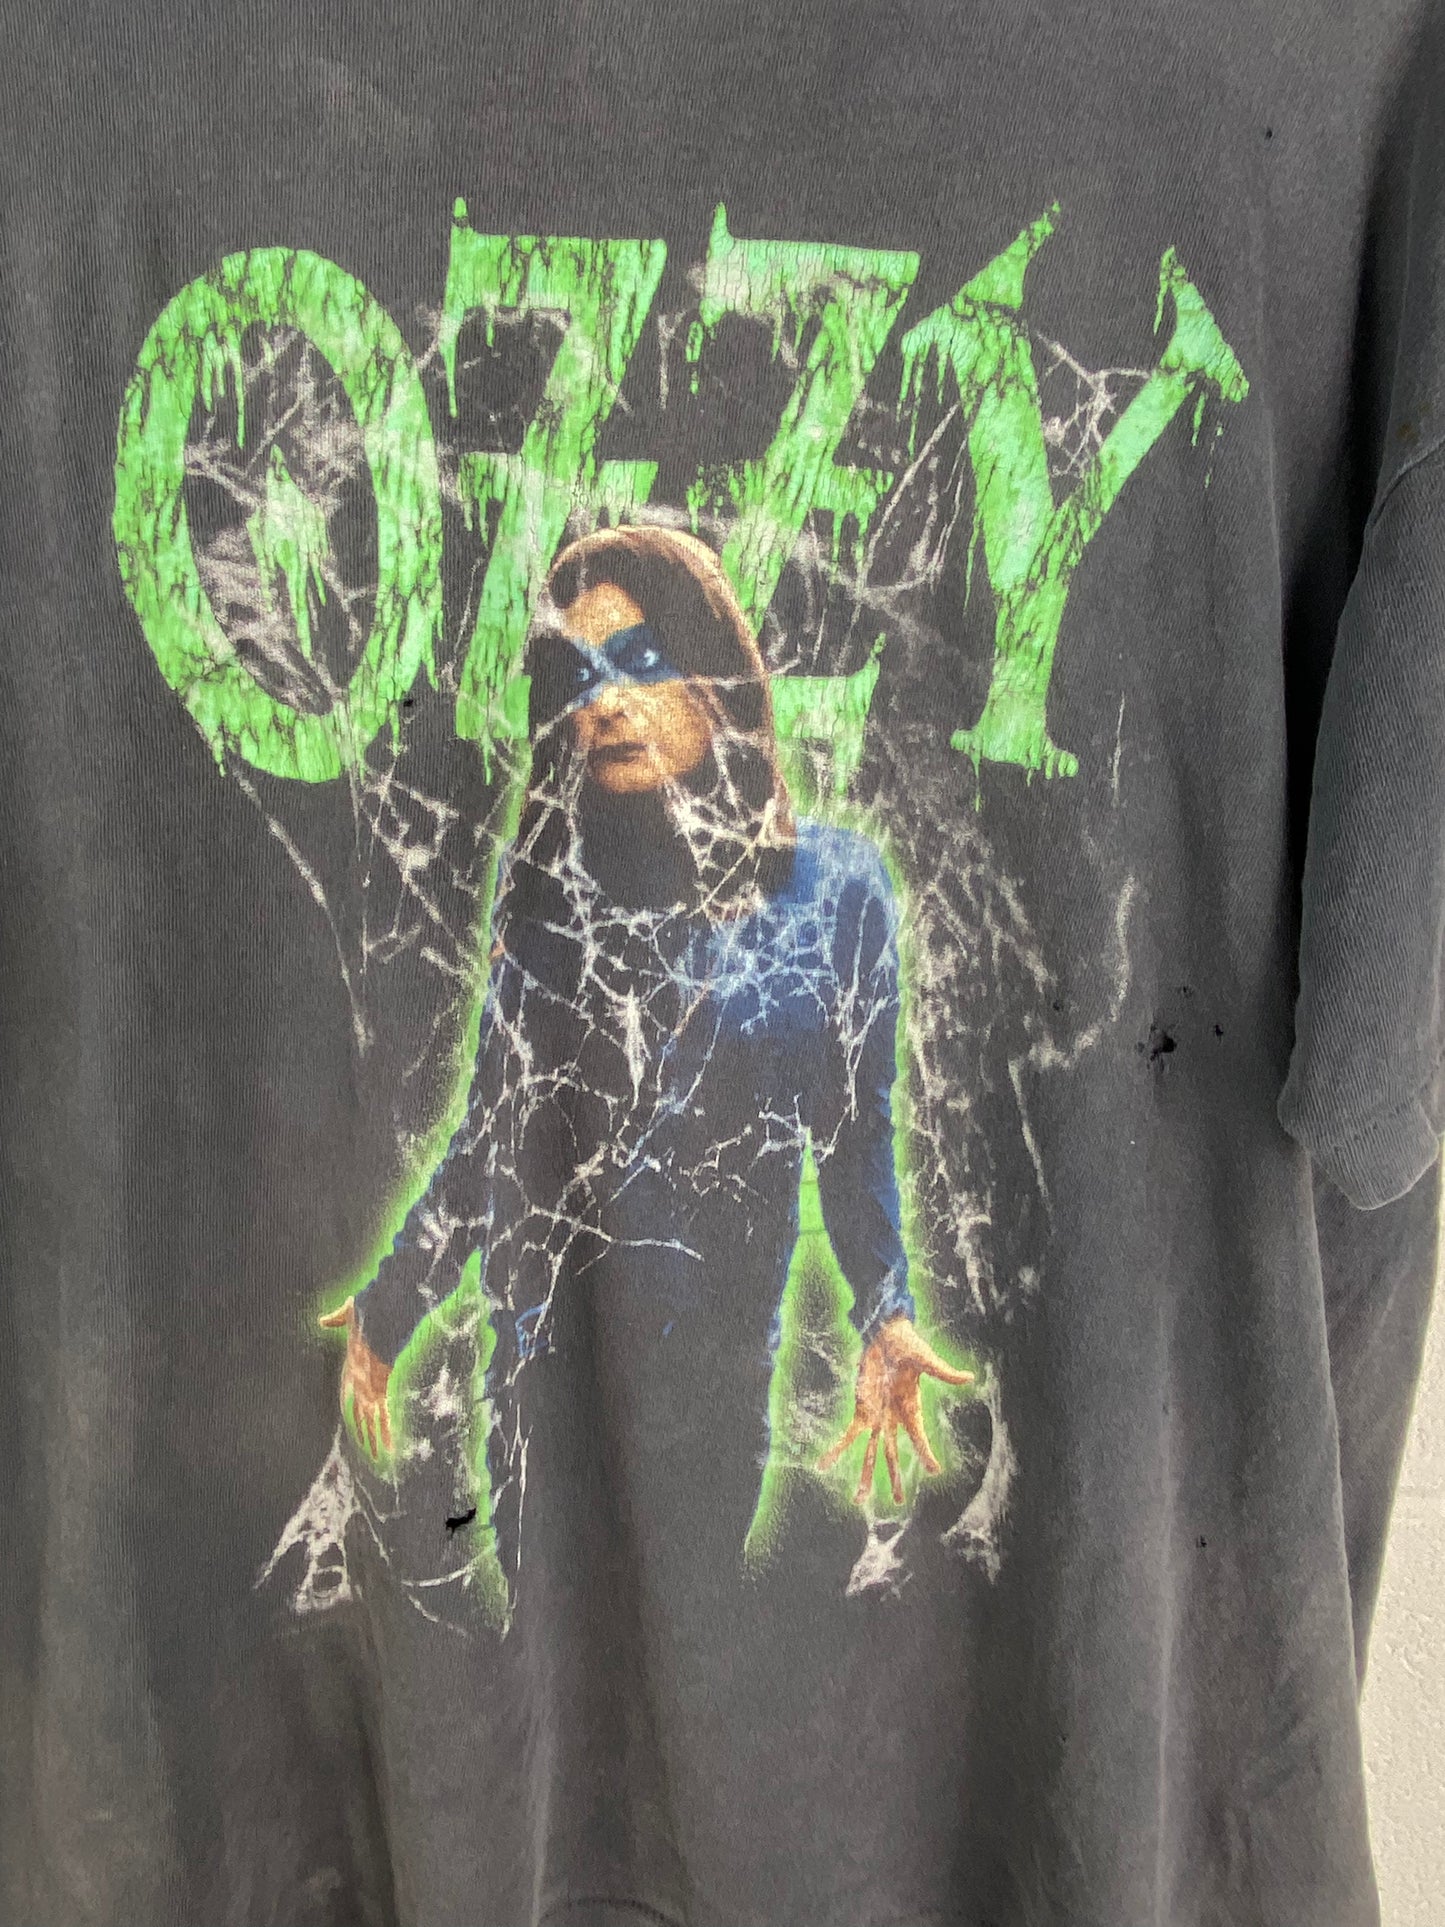 VTG Thrashed Ozzy Osbourne Spiderweb T-Shirt Sz XL